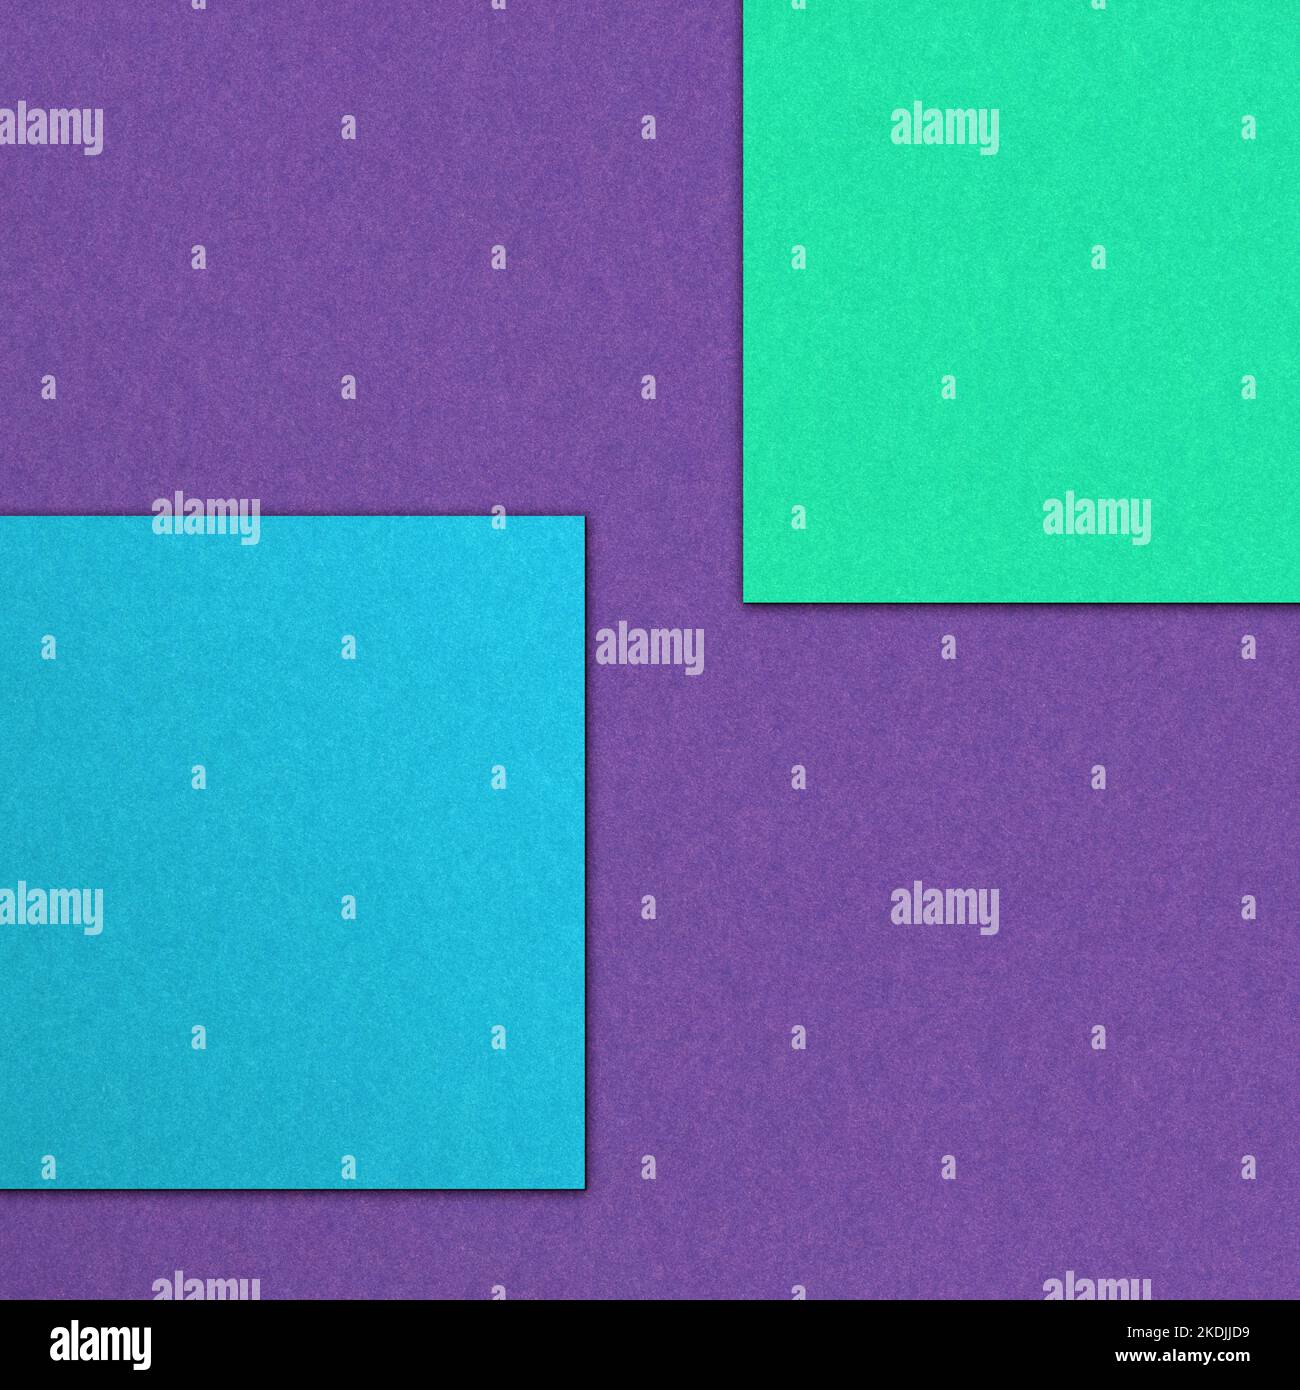 Grünes Quadrat auf violetten Papiertextur. Lebendiger Farbhintergrund für Ihre Objekte. Einfaches Grafikelement für die weitere Arbeit. Stockfoto